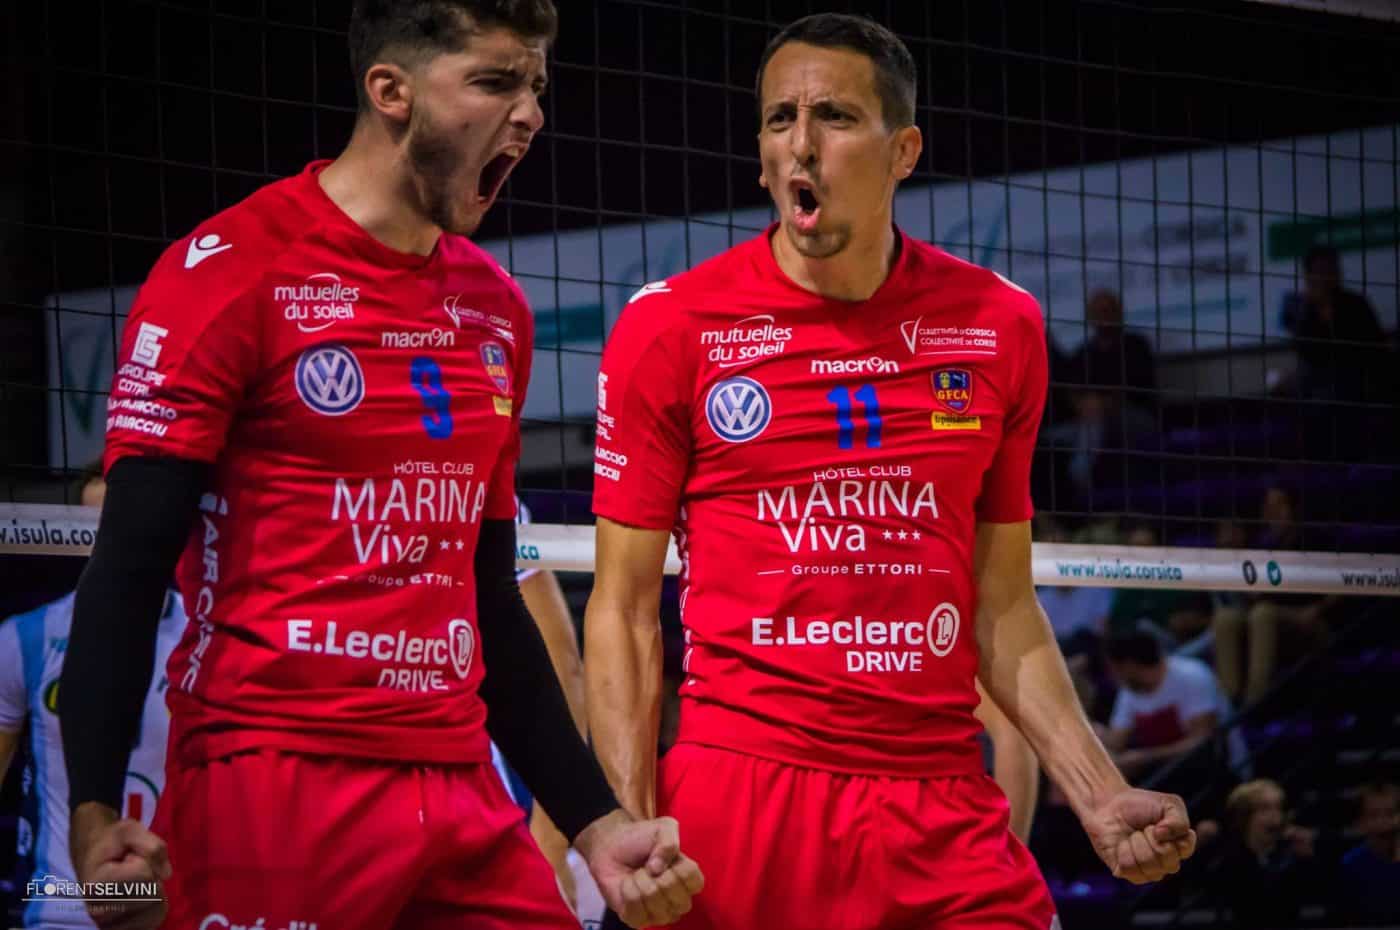 nouveau-maillot-volley-GFCA-ajaccio-volley-macron-2018-2019-lam-lnv-3